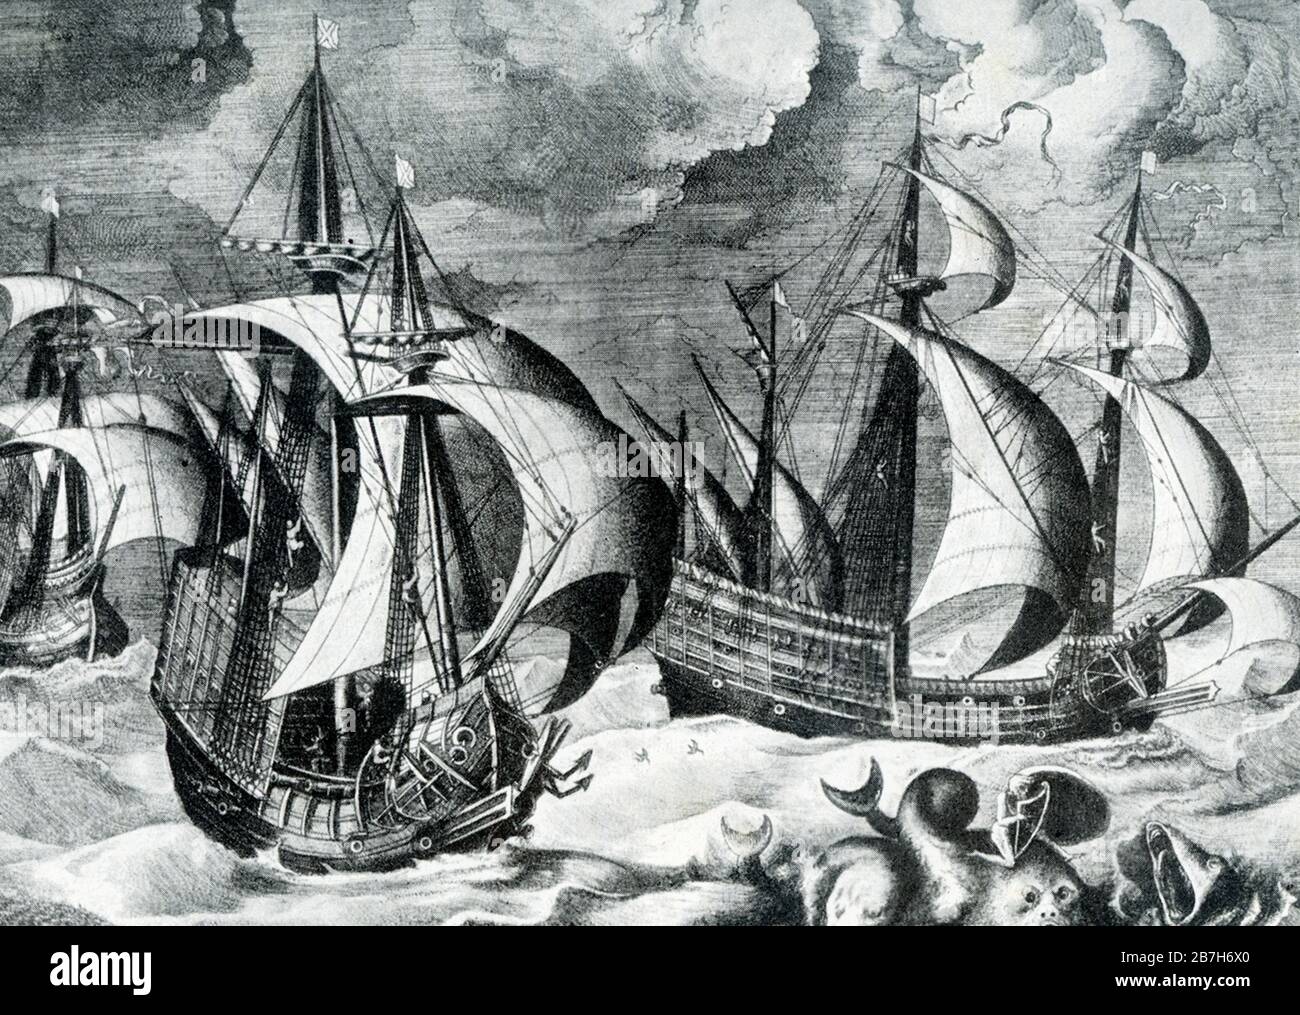 Dieses Bild, das auf die frühen 1900er Jahre zurückgeht, zeigt spanische Galeonen, groß, Mehrdeckige Segelschiffe, die zuerst von den Spaniern als bewaffnete Frachtführer eingesetzt und später von anderen europäischen Staaten im Alter von Segeln vom 16. Bis 18. Jahrhundert übernommen wurden, waren die wichtigsten Flotteneinheiten, die bis zu den Anglo-Niederländischen Kriegen Mitte der 1600er Jahre als Kriegsschiffe entworfen wurden. Stockfoto